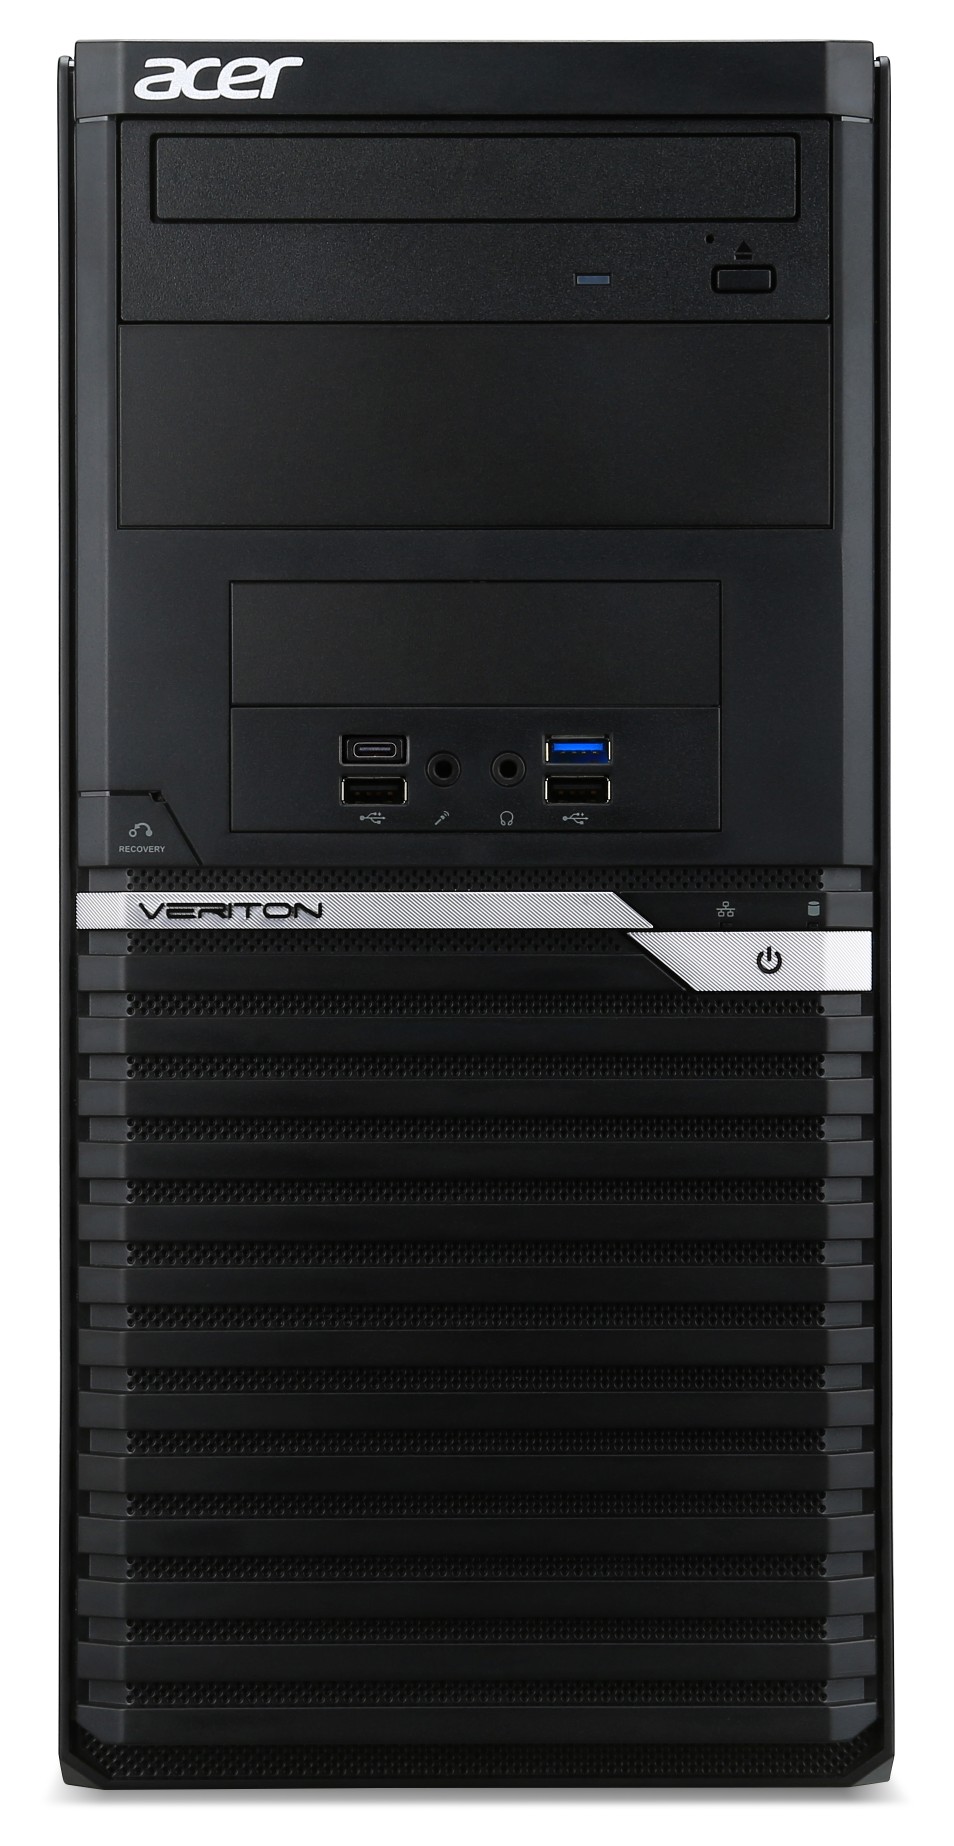 ACER   VM6660G-00F 個人電腦 i7-8700/8G/1TB+128GB/DRW / CR/防毒 / 無OS/USB鍵盤/USB滑鼠/3Y/ UD.VQUTA.0